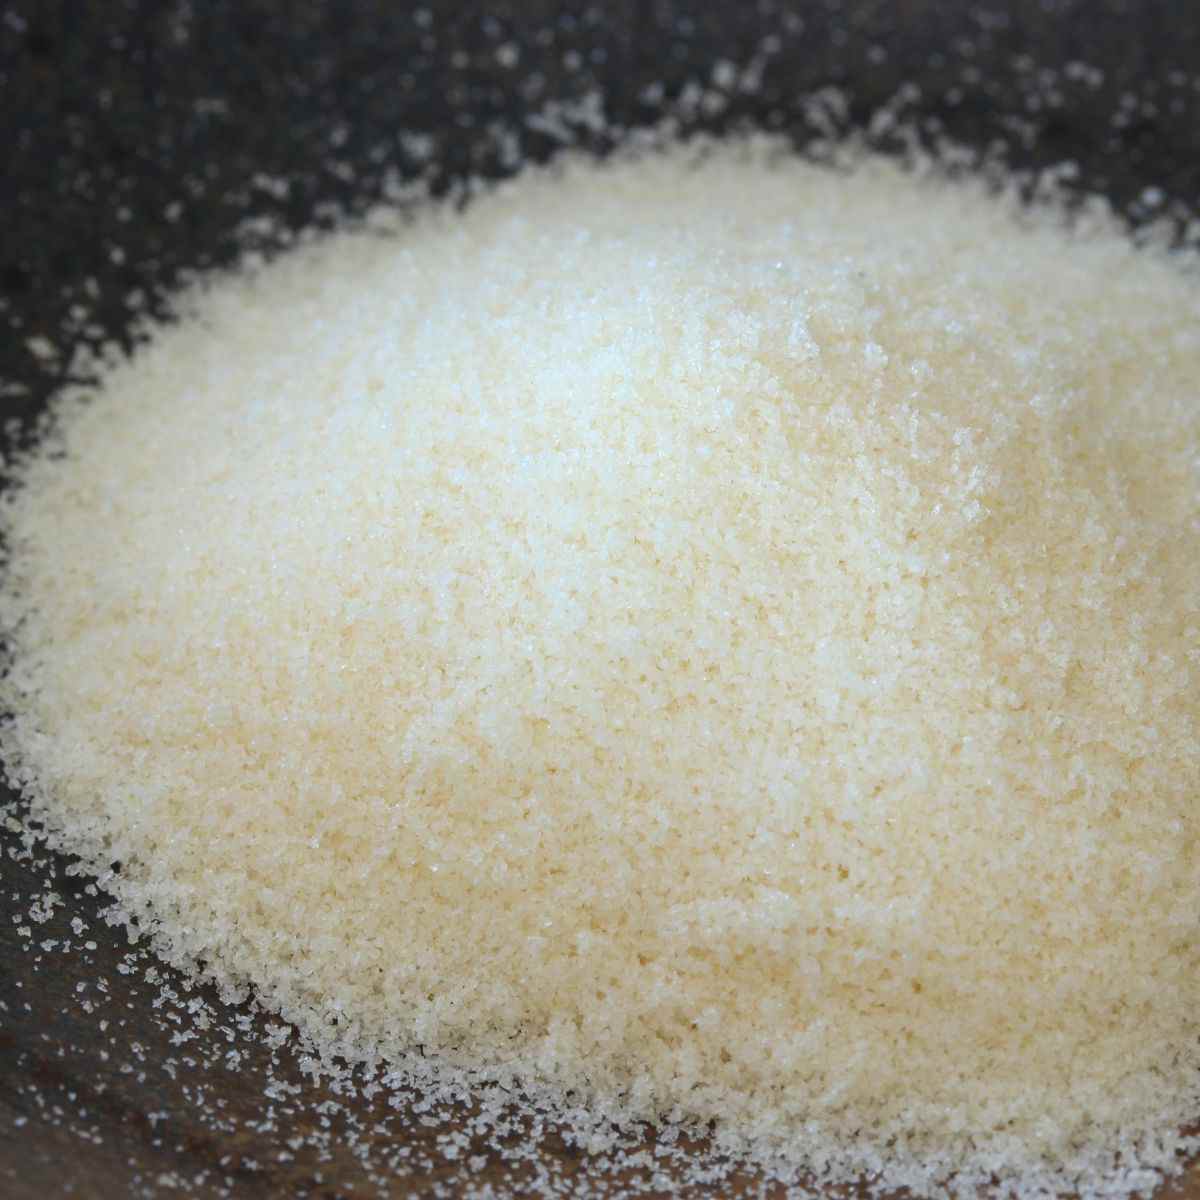 Gelatin powder on a wooden surface.